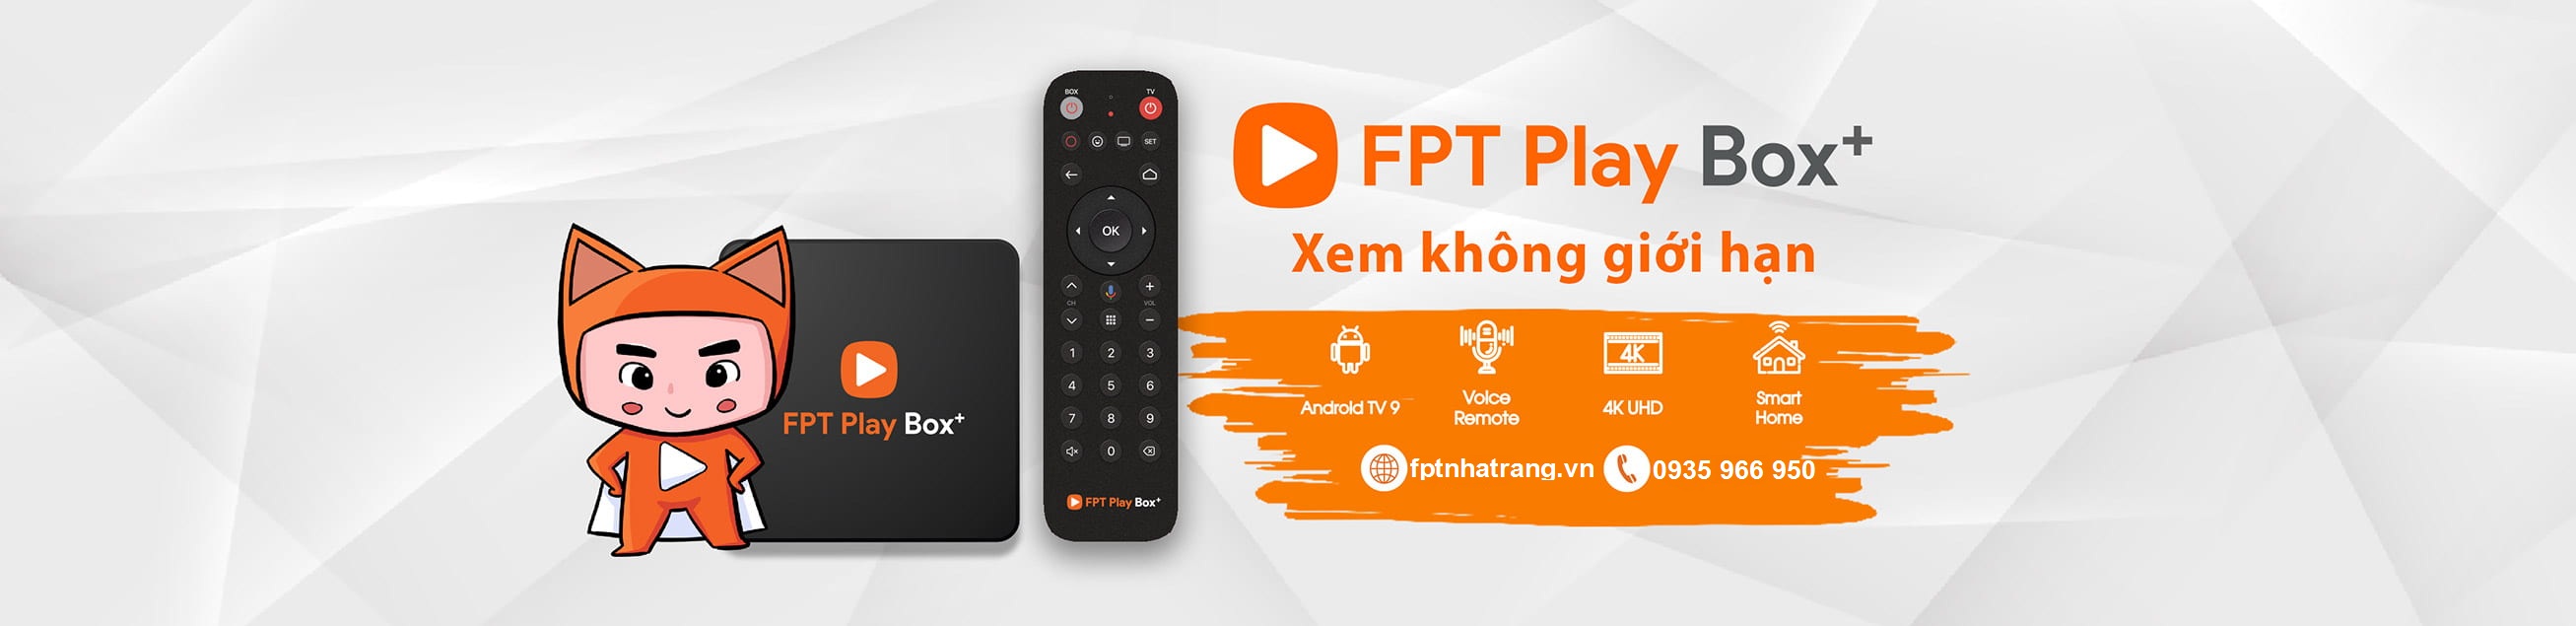 Android TV Box Đầu Tiên Sử Dụng Hệ Điều Hành Android TV 9.0 - Phân Phối Chính Hãng FPTNhaTrang.VN